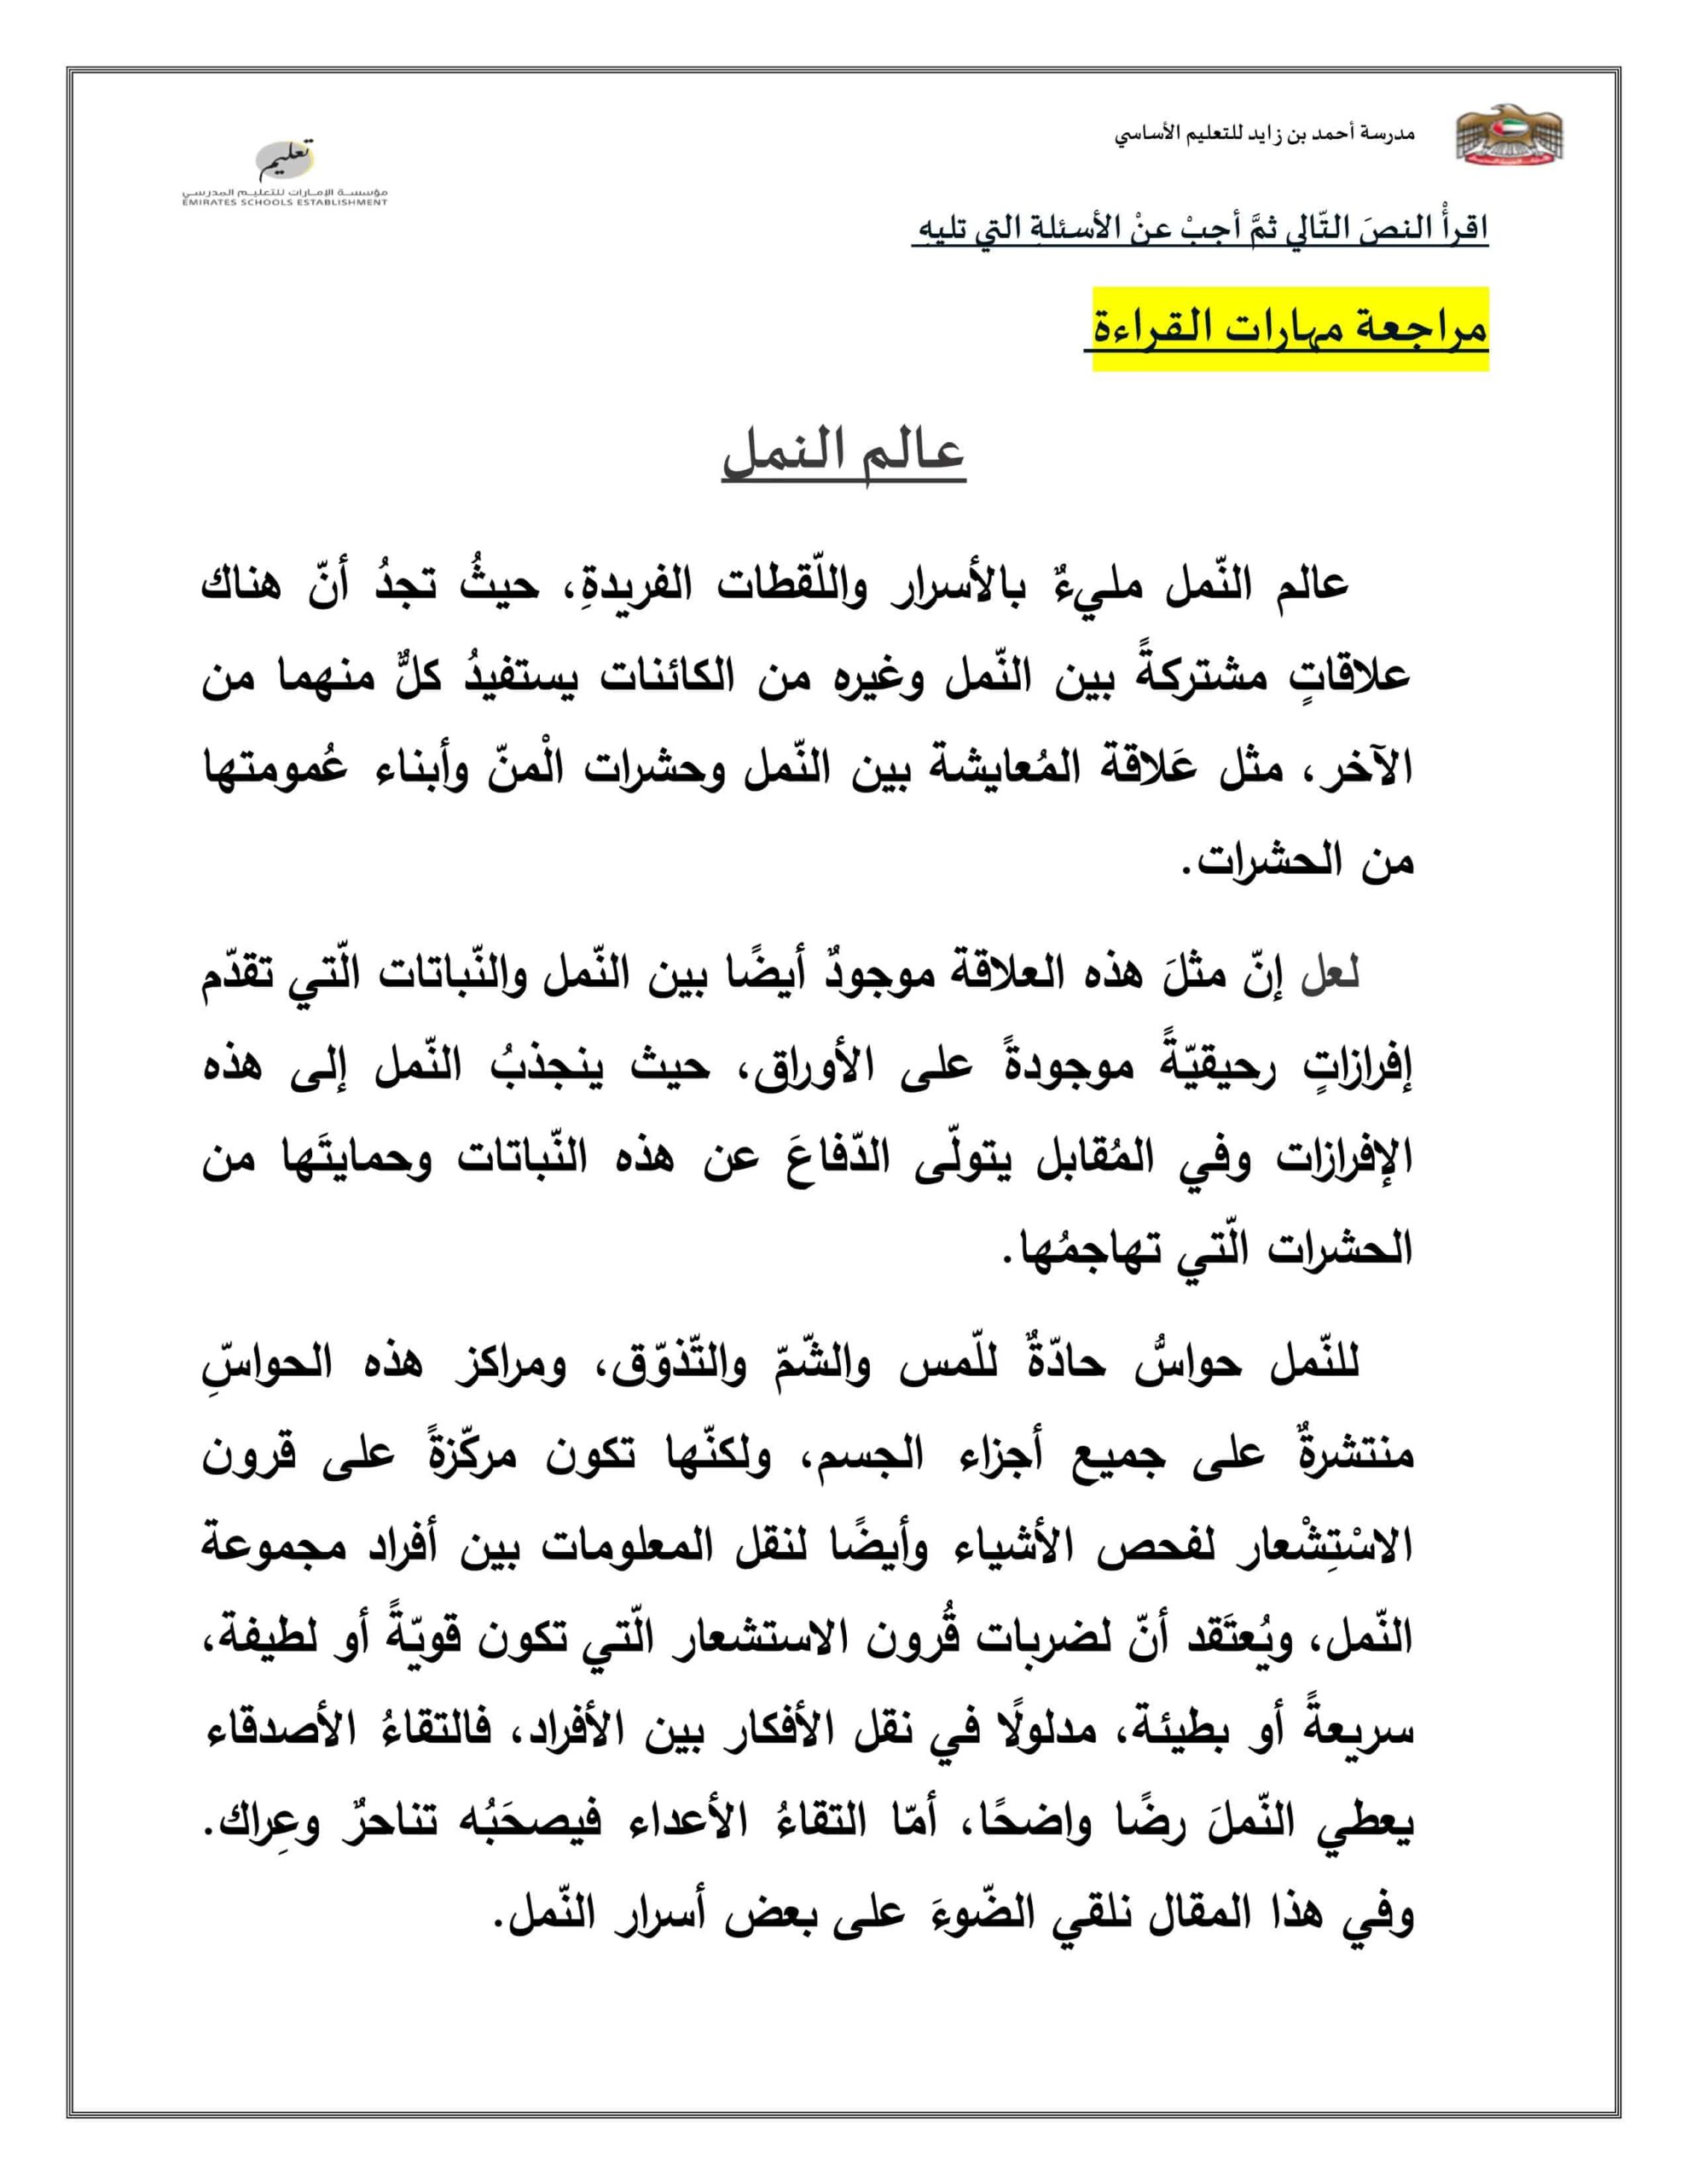 مراجعة مهارة القراءة عالم النمل اللغة العربية الصف الرابع